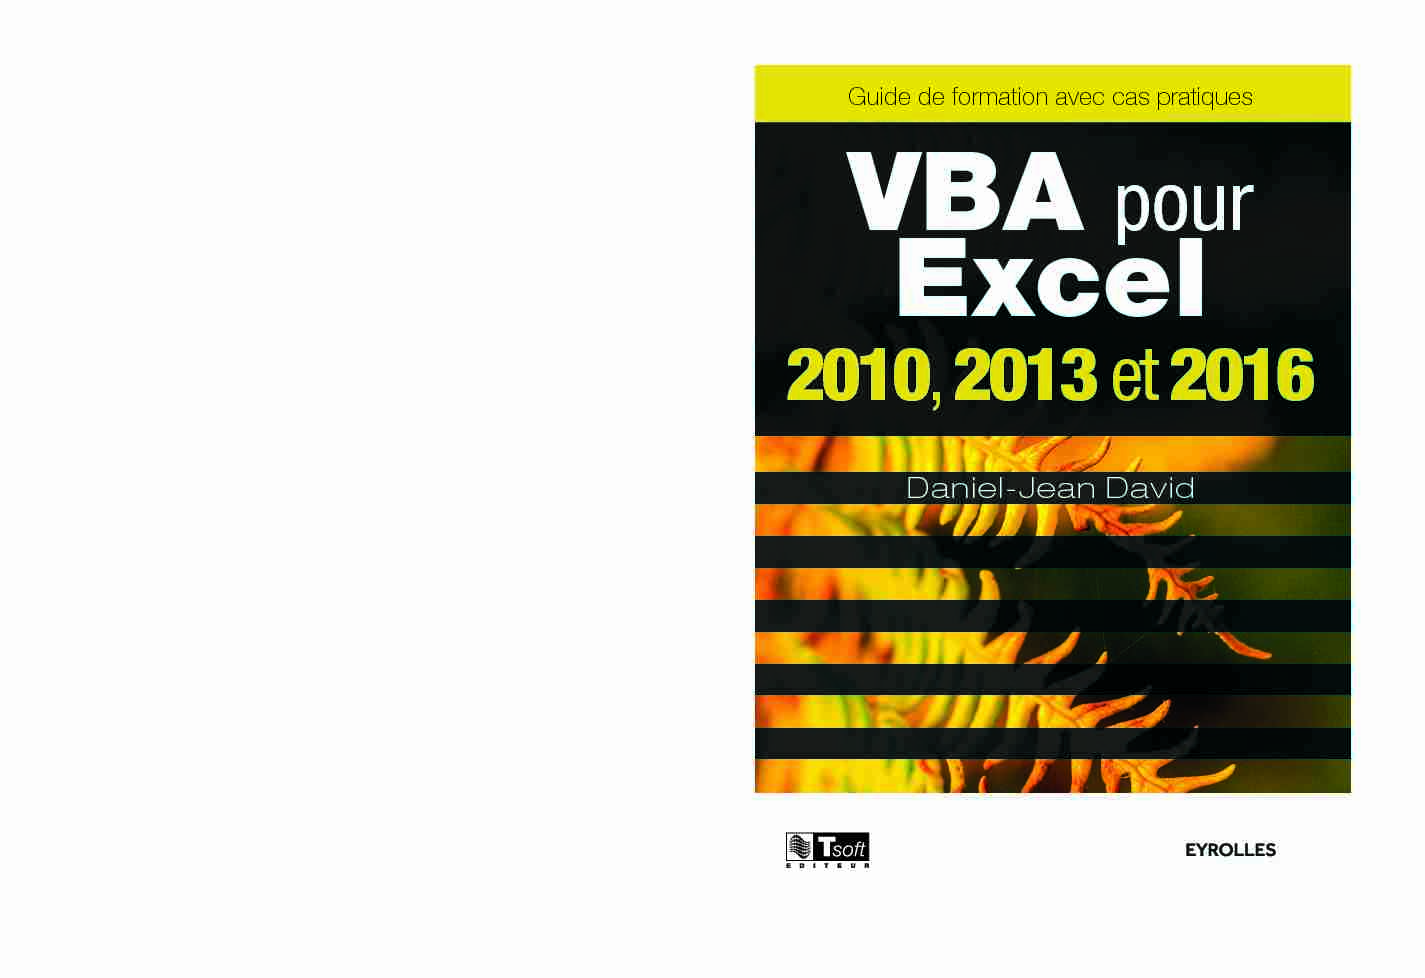 VBA pour Excel 2010 2013 et 2016